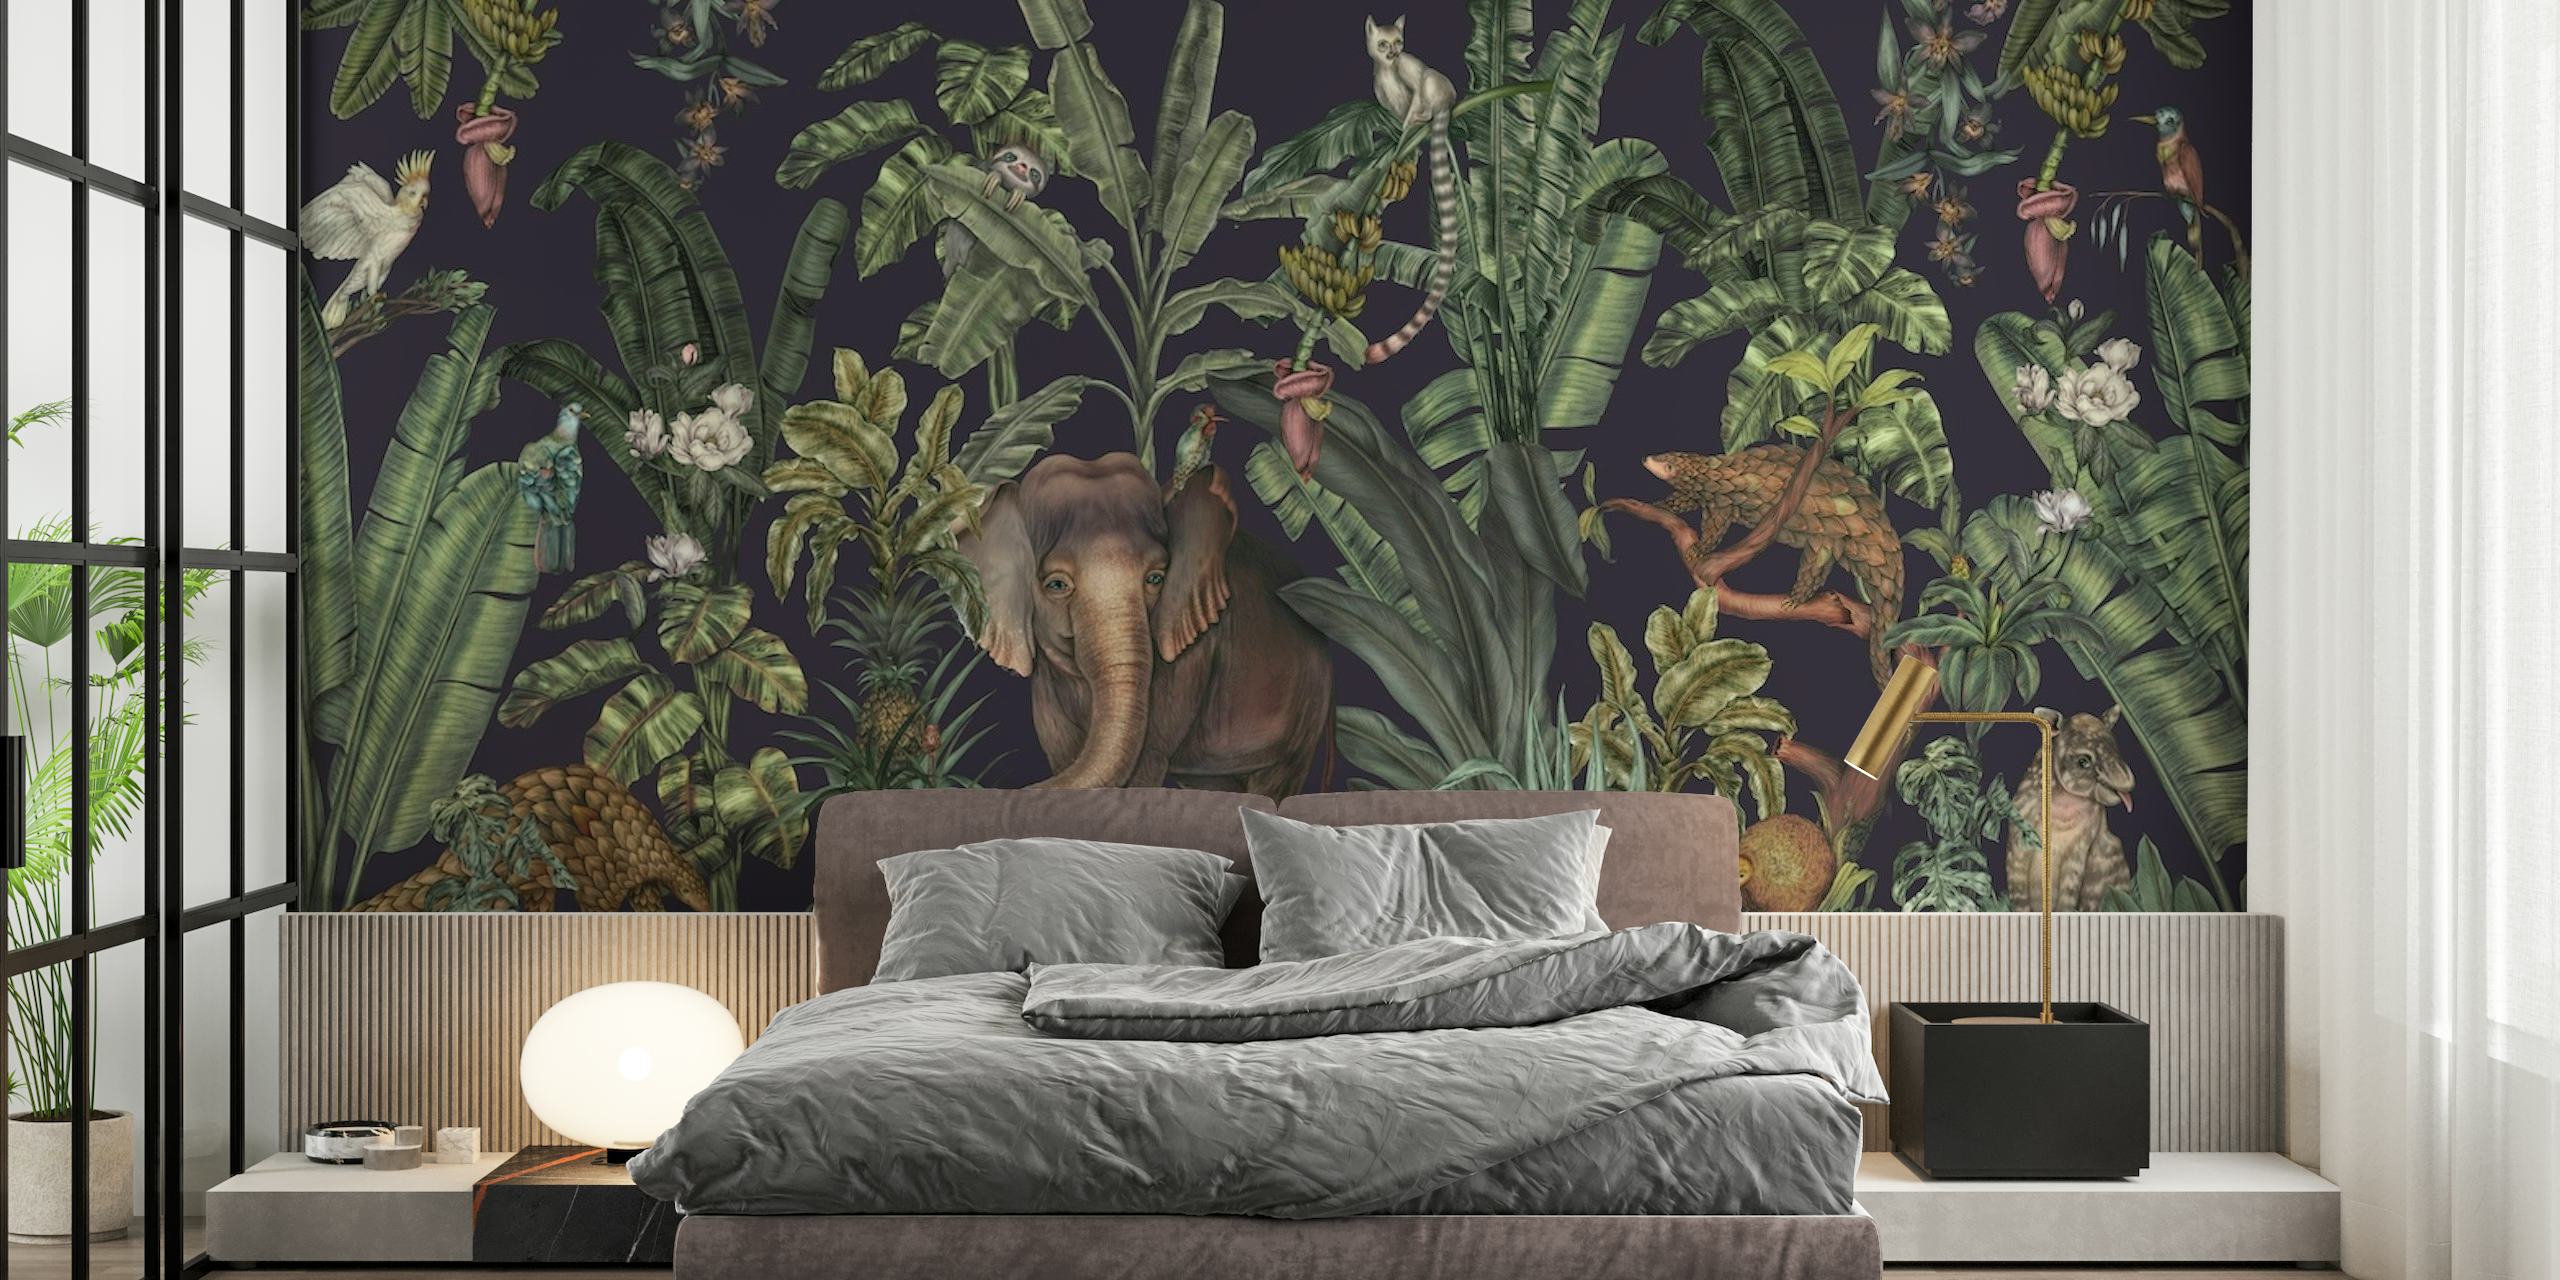 Papier peint jungle tropicale avec une verdure dense et une faune cachée